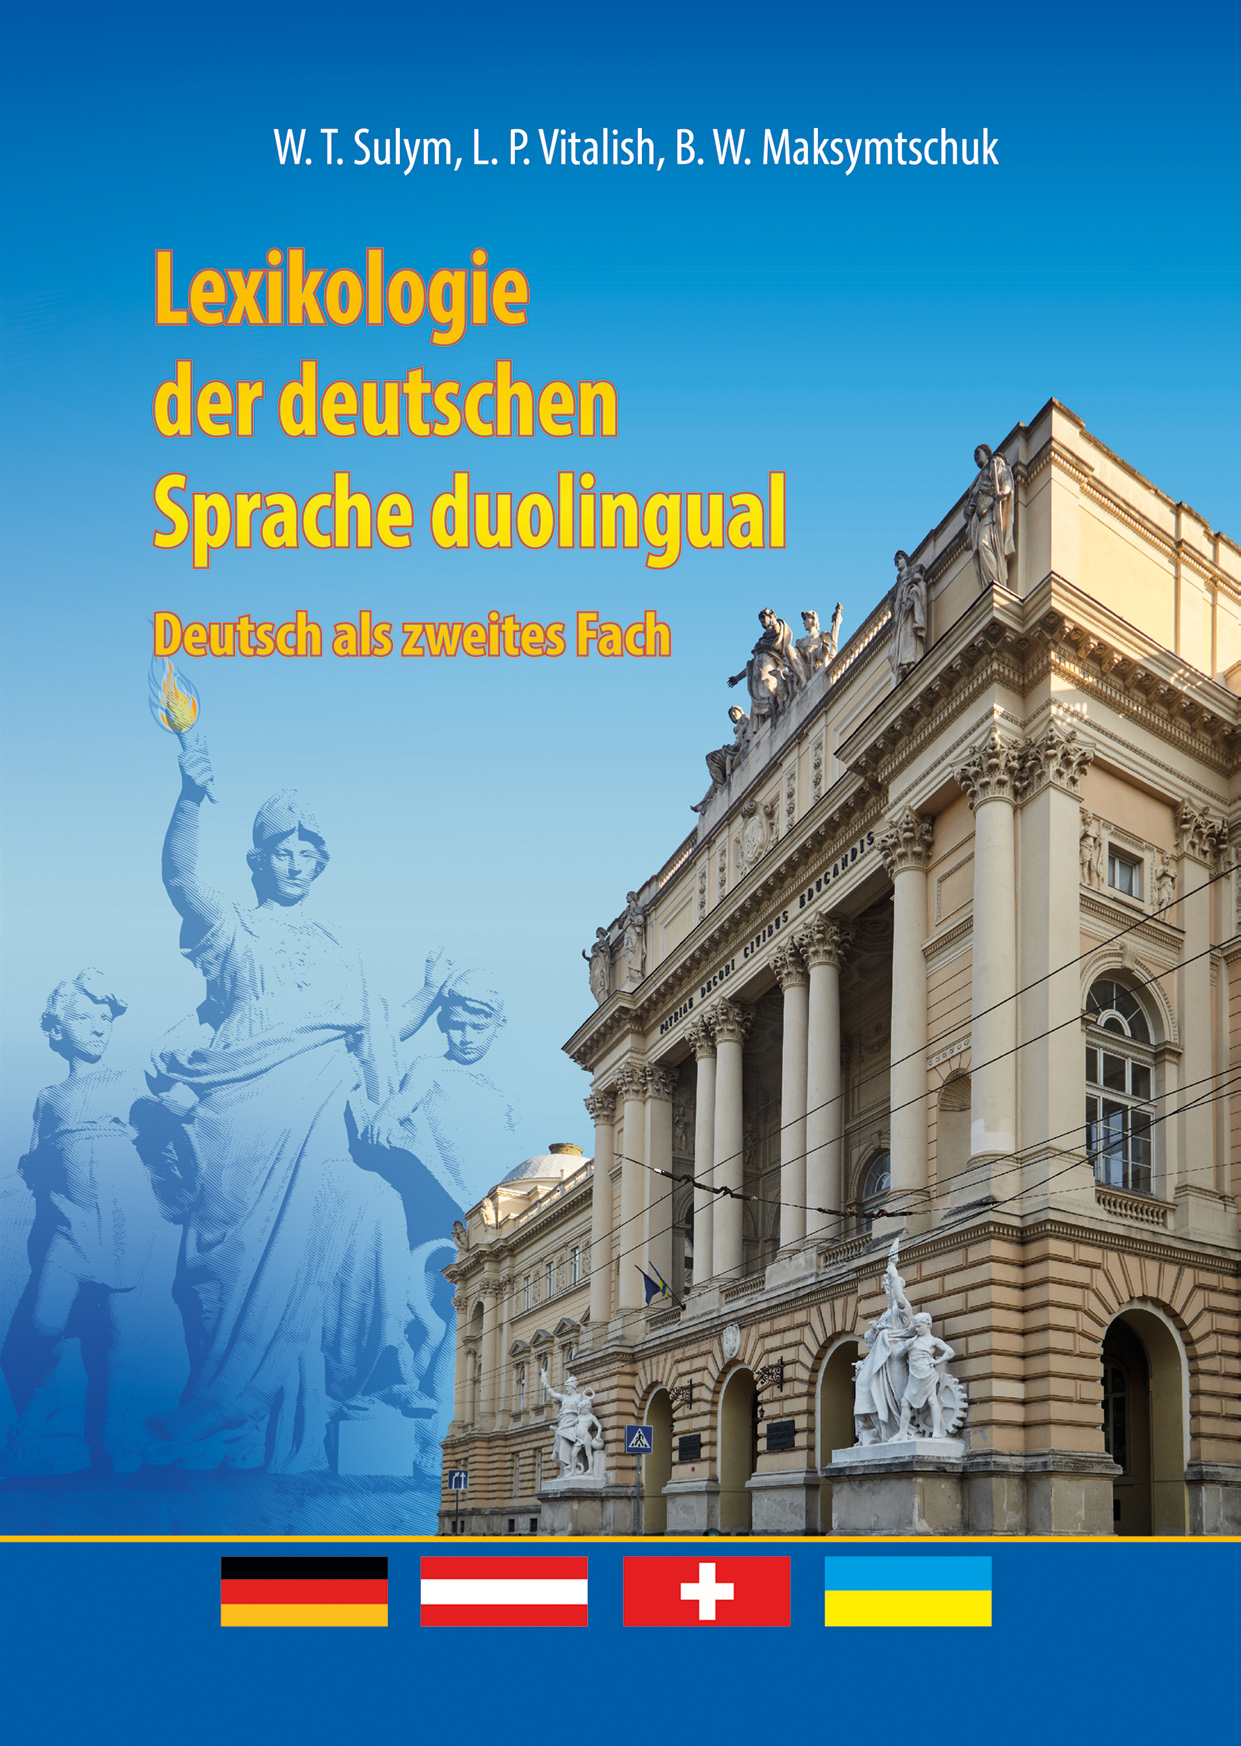 Lexikologie der deutschen Sprache duolingual: Deutsch als zweites Fach: Lehrbuch = Двомовна лексикологія німецької мови як другої іноземної